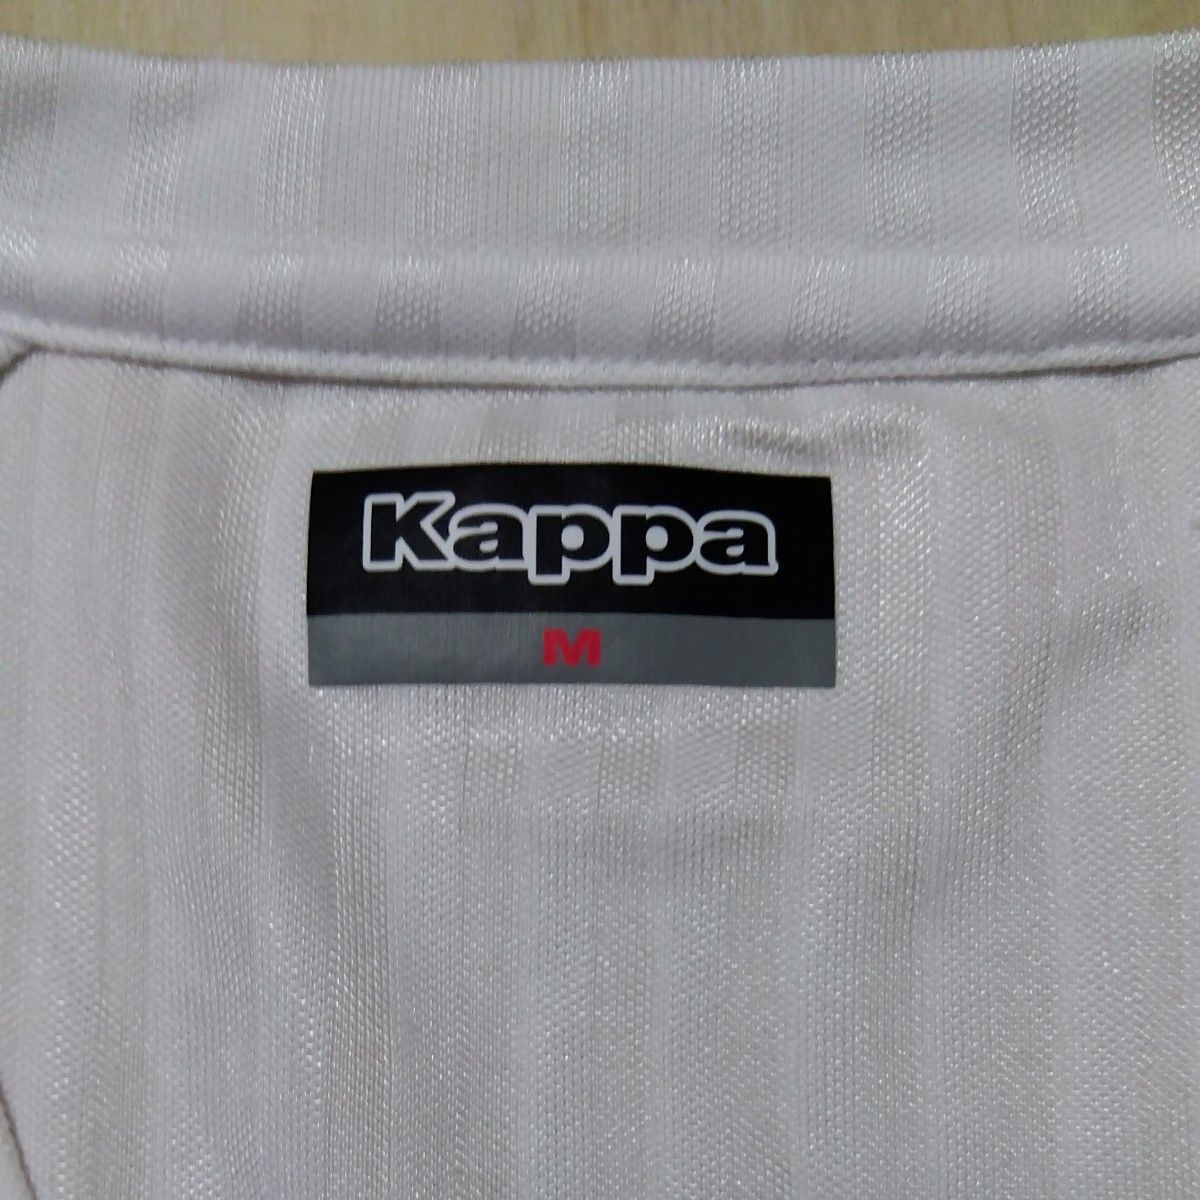 Kappa  カッパ  Tシャツ  メンズ  Mサイズ  白・ホワイト  トップス